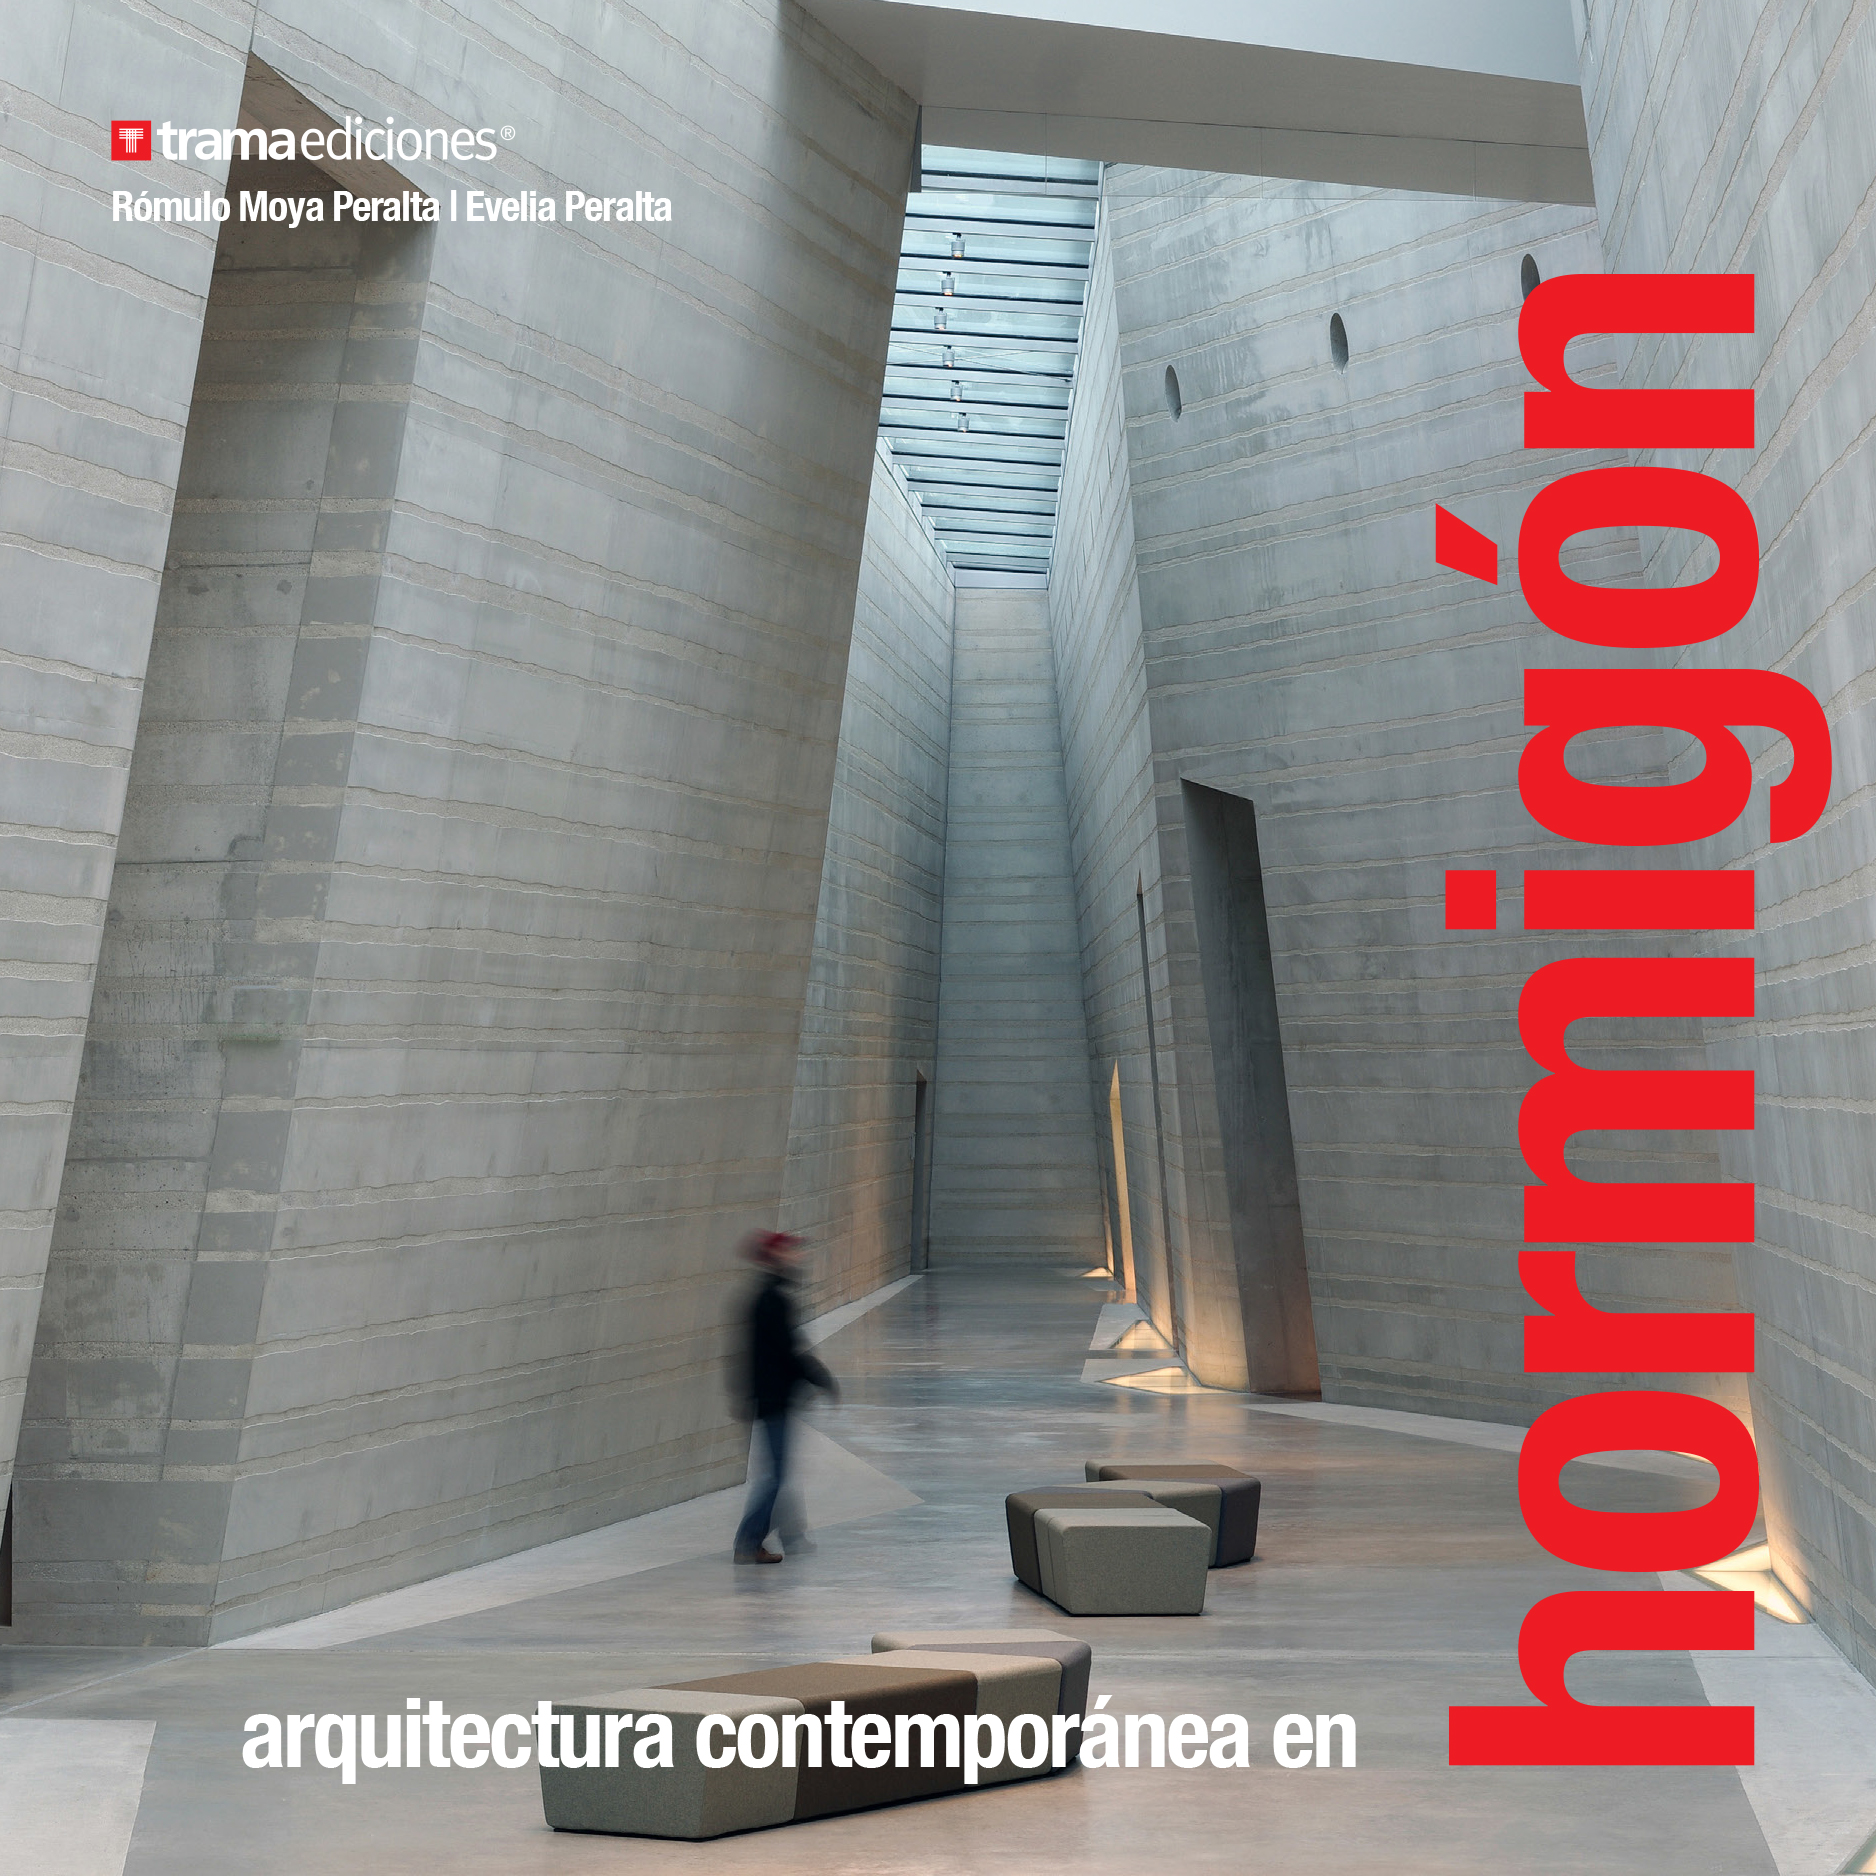 Arquitectura Contemporánea en Hormigón (incluye envío dentro de Ecuador)